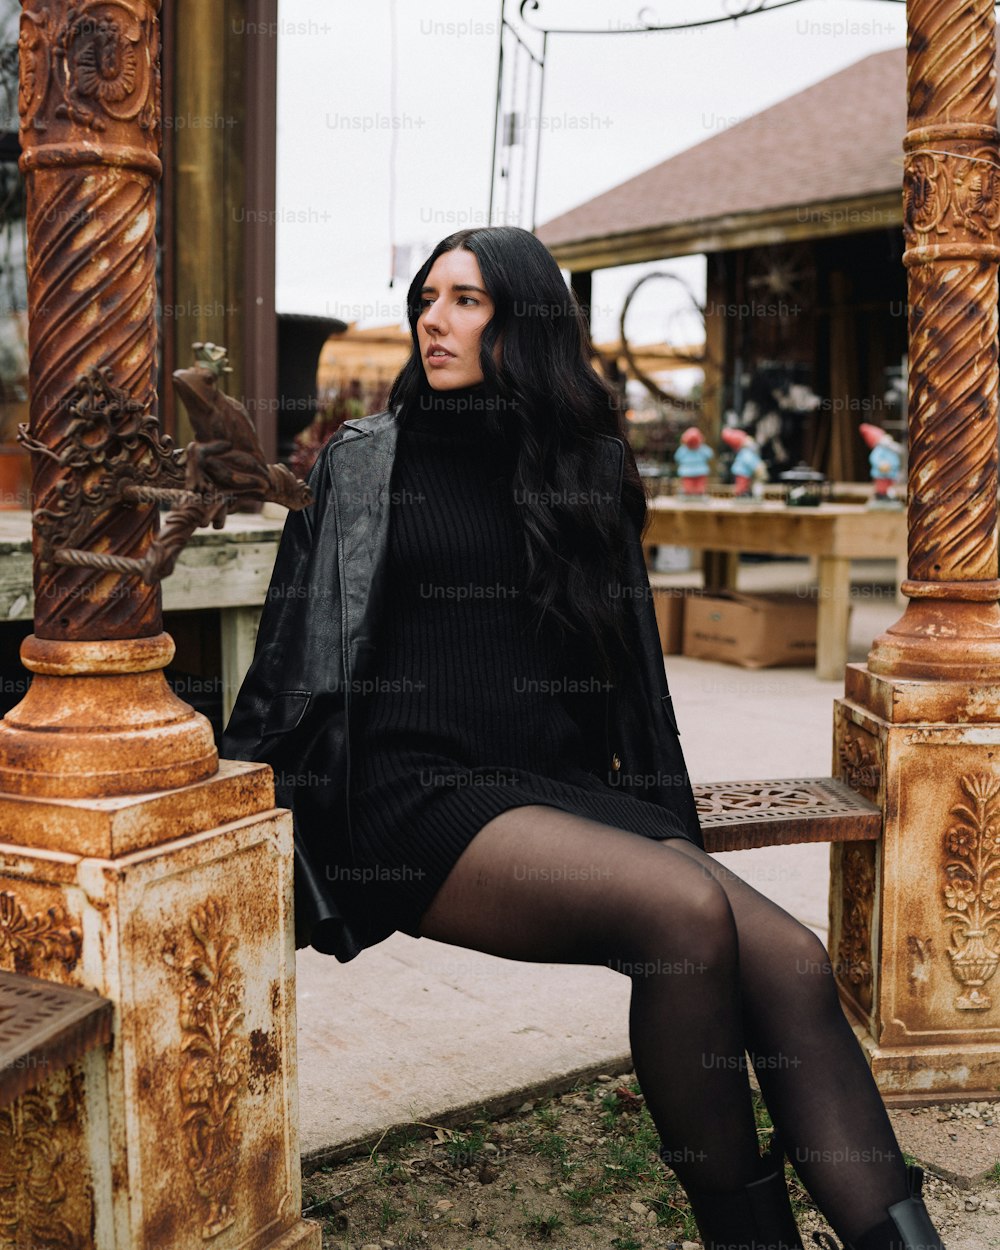 Eine Frau, die in einem schwarzen Kleid auf einer Holzbank sitzt